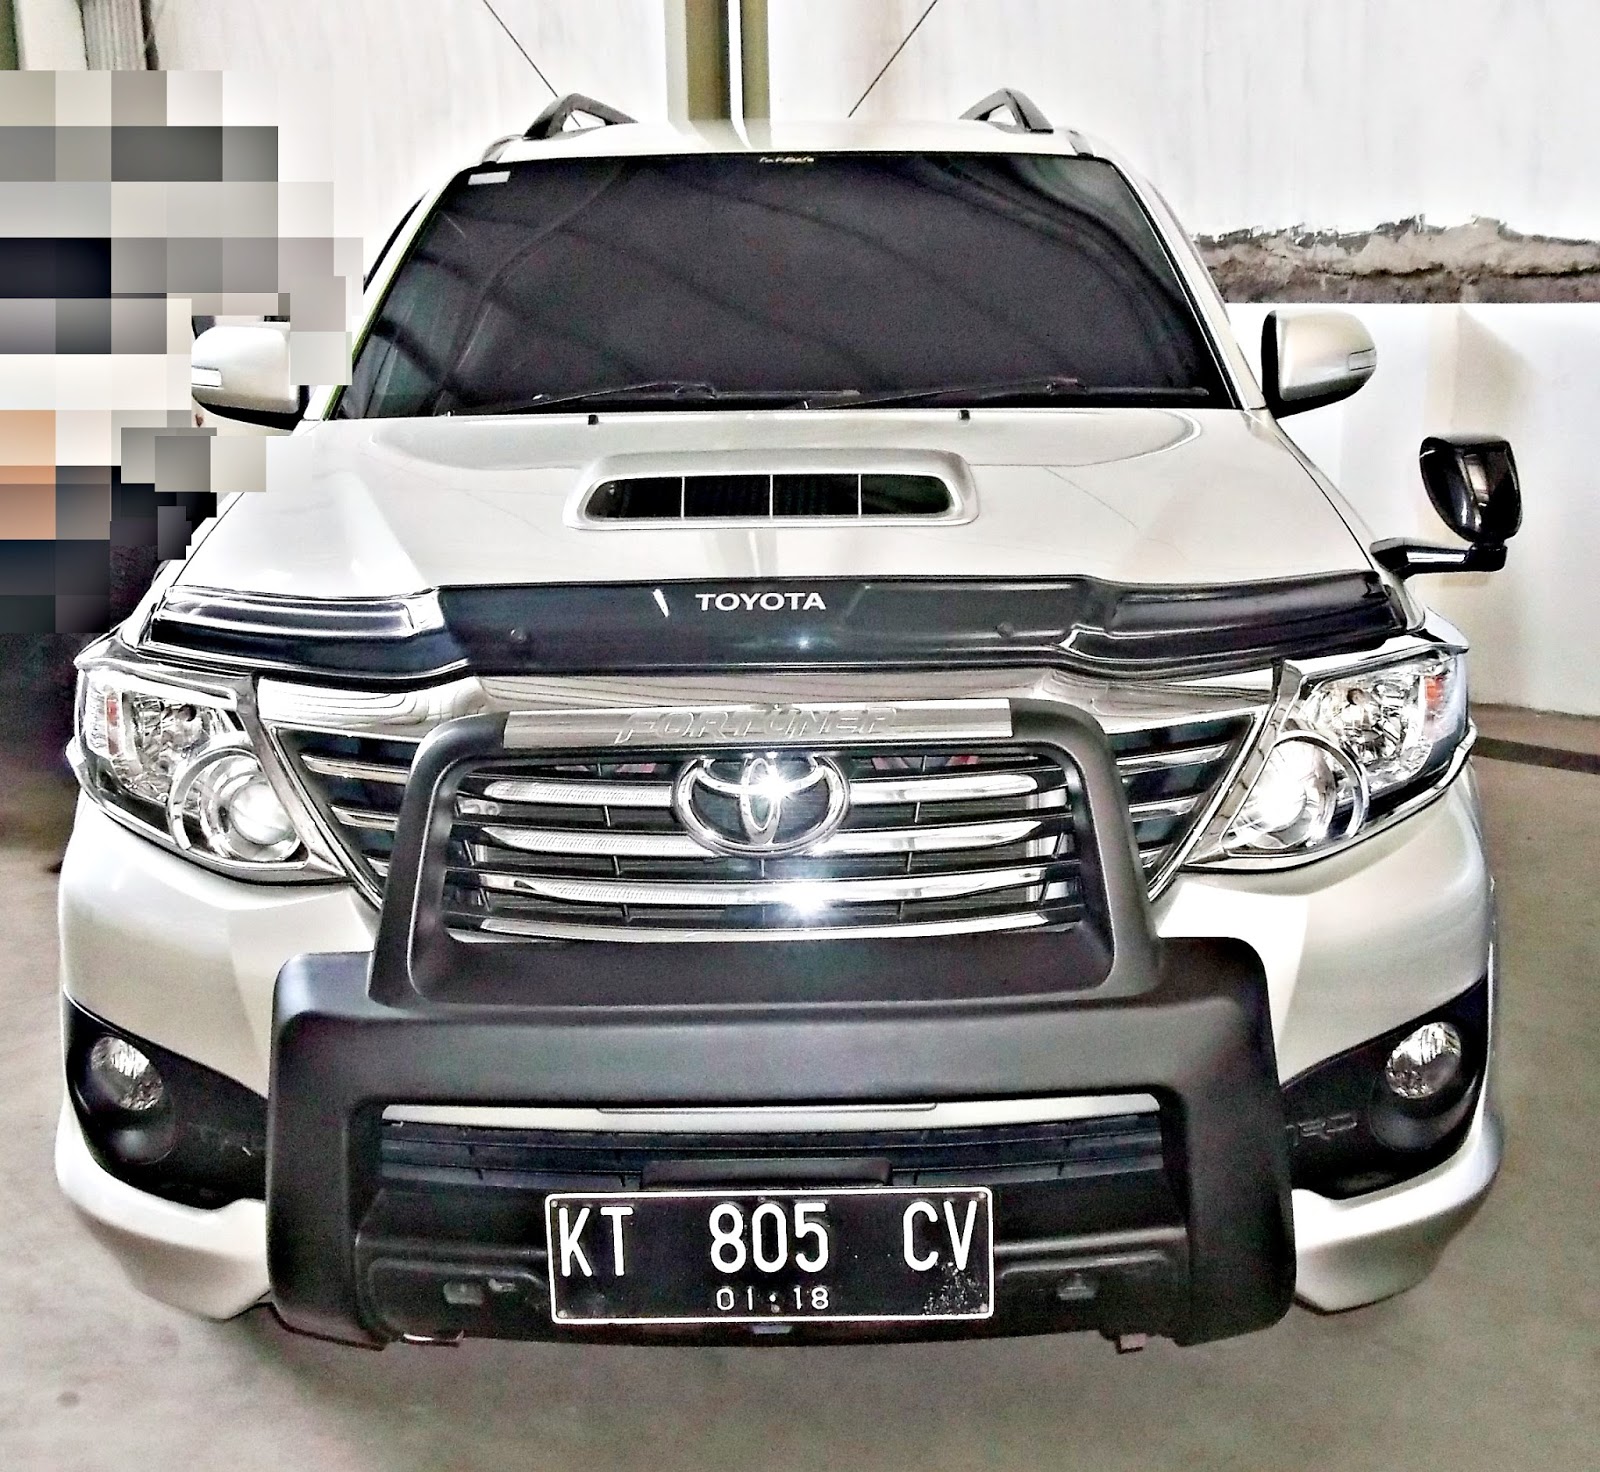 IKLAN BISNIS SAMARINDA Dijual Mobil Toyota Fortuner 2013